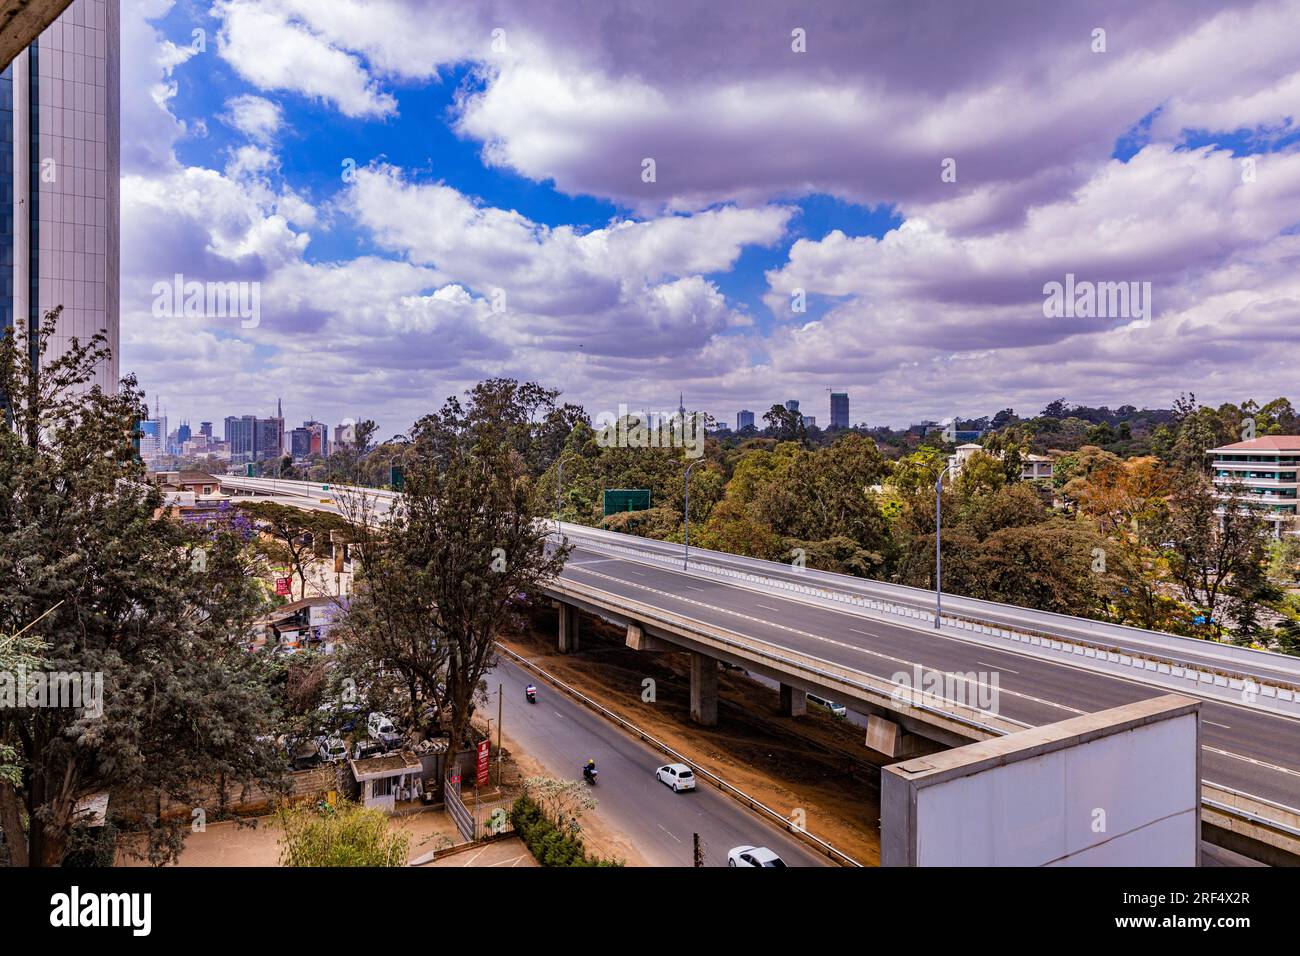 Nairobi Capital Kenia Skyline Wolkenkratzer Moderne Wahrzeichen Gebäude Turm Architektonische Außenfassaden Hochhaus Skyline Straßen Nacht City County Stadtlandschaft Stockfoto